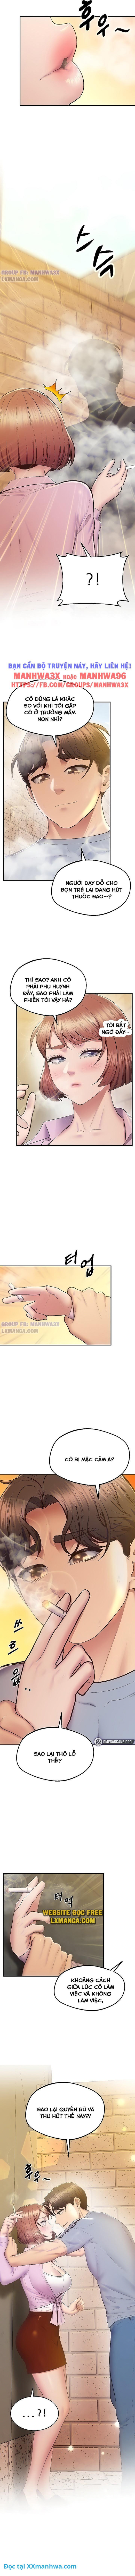 manhwax10.com - Truyện Manhwa Đồng hồ quyền năng Chương 20 Trang 5